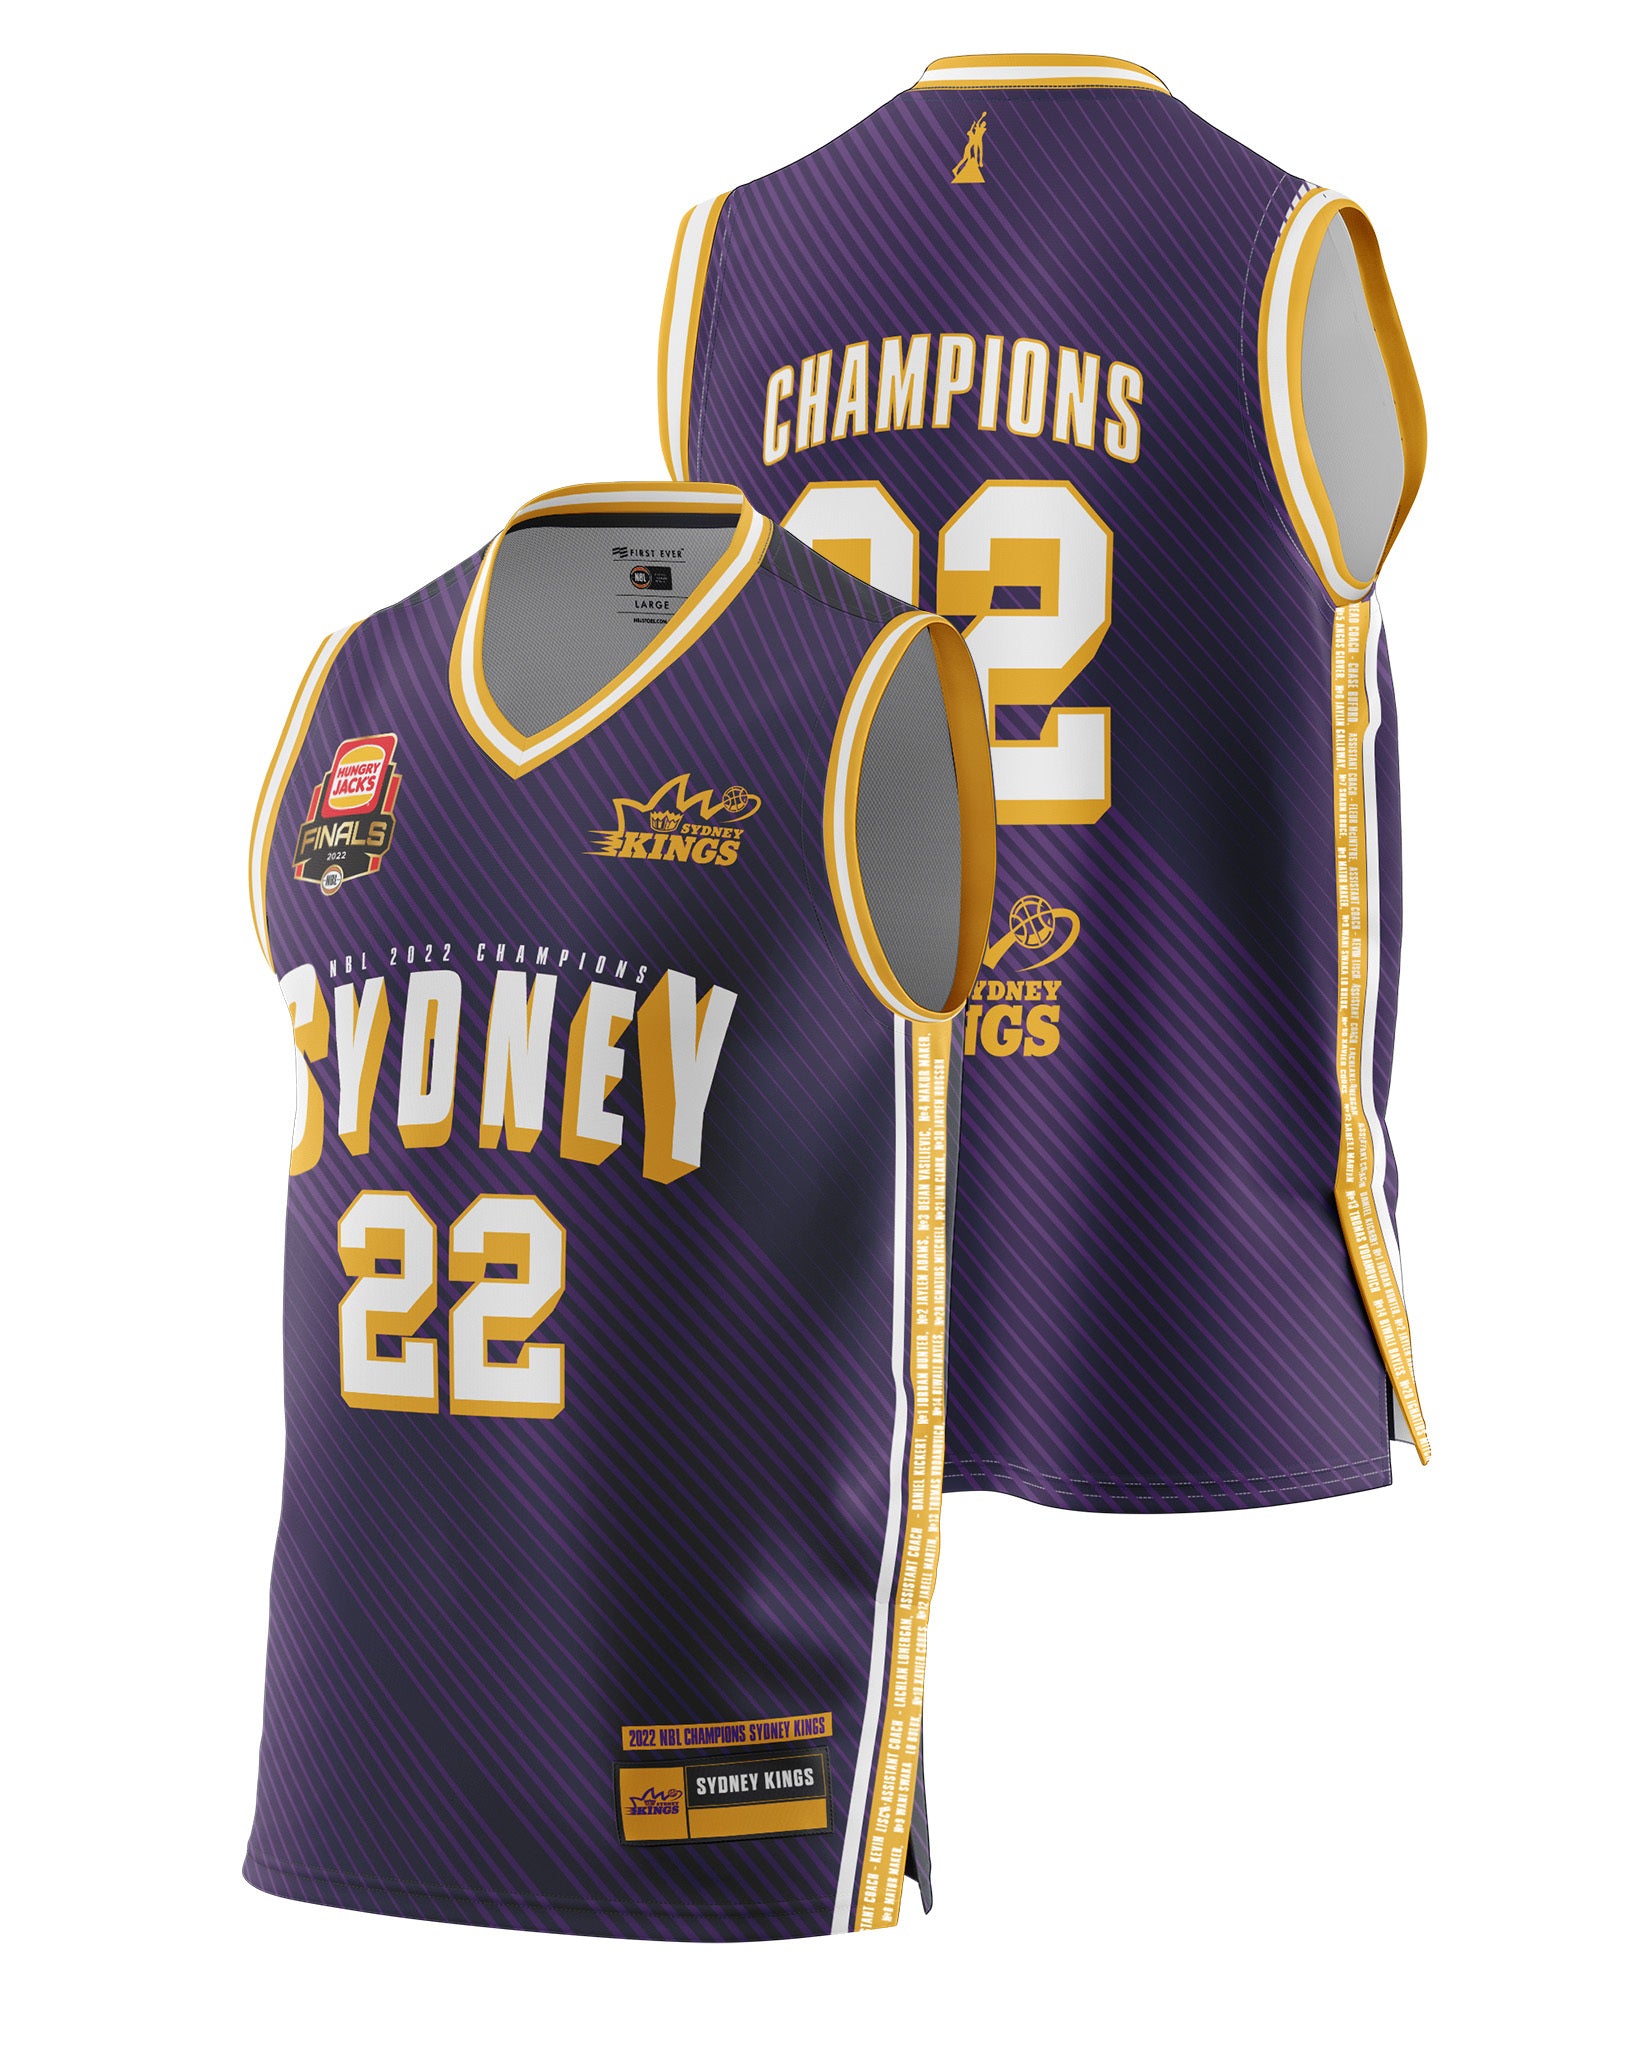 Sydney Kings Jerseys & Merchandise, Sydney Kings Shop